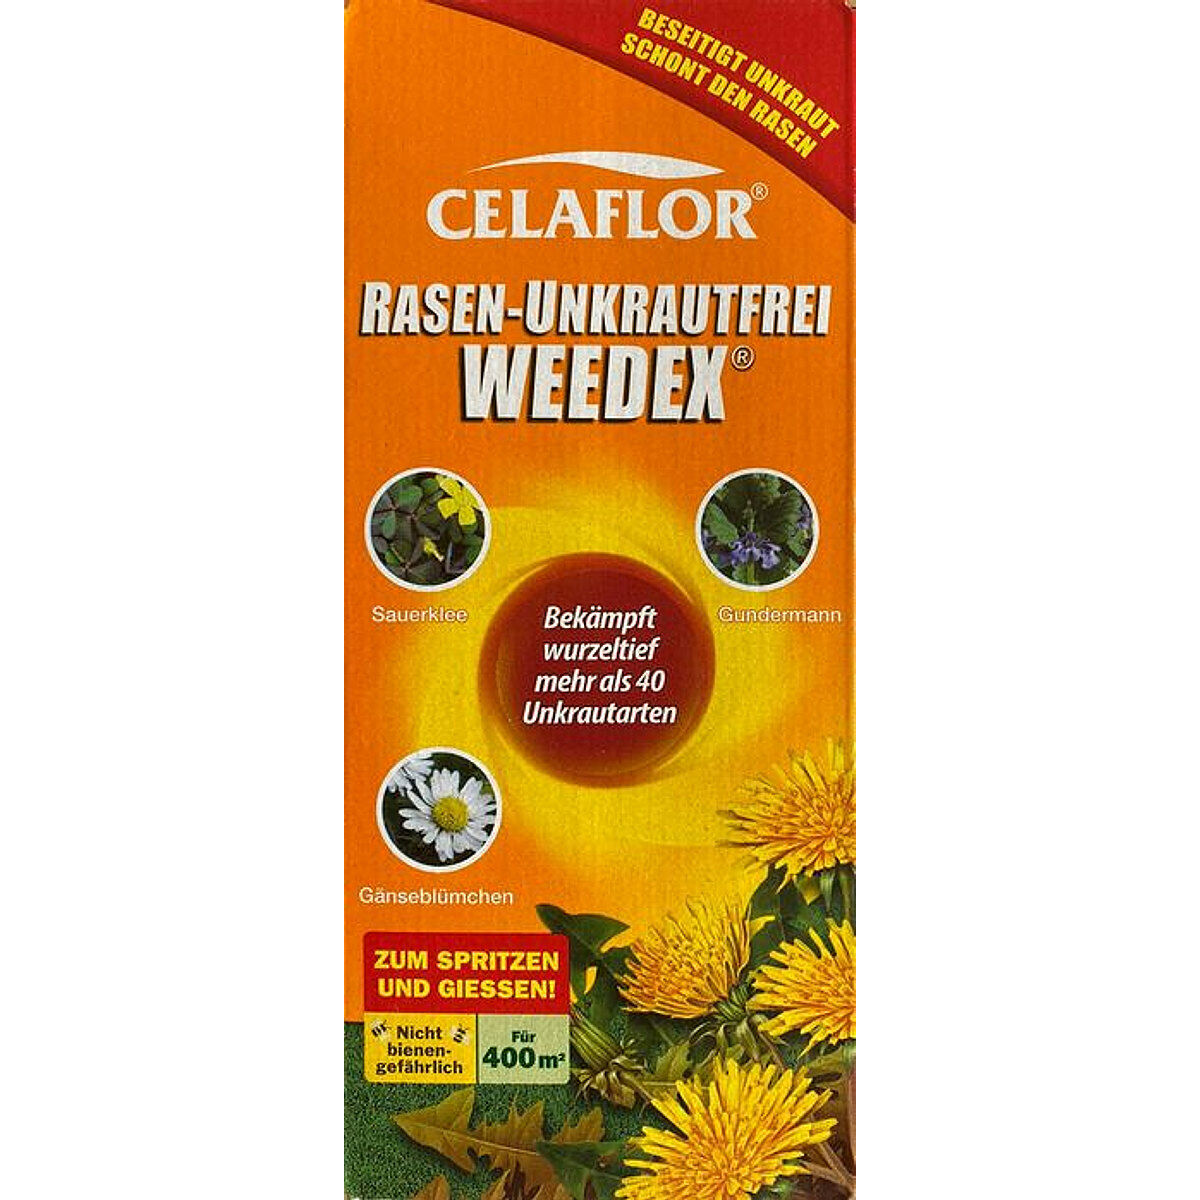 Celaflor Rasen-Unkrautfrei WEEDEX 400ml für 400qm - 3579